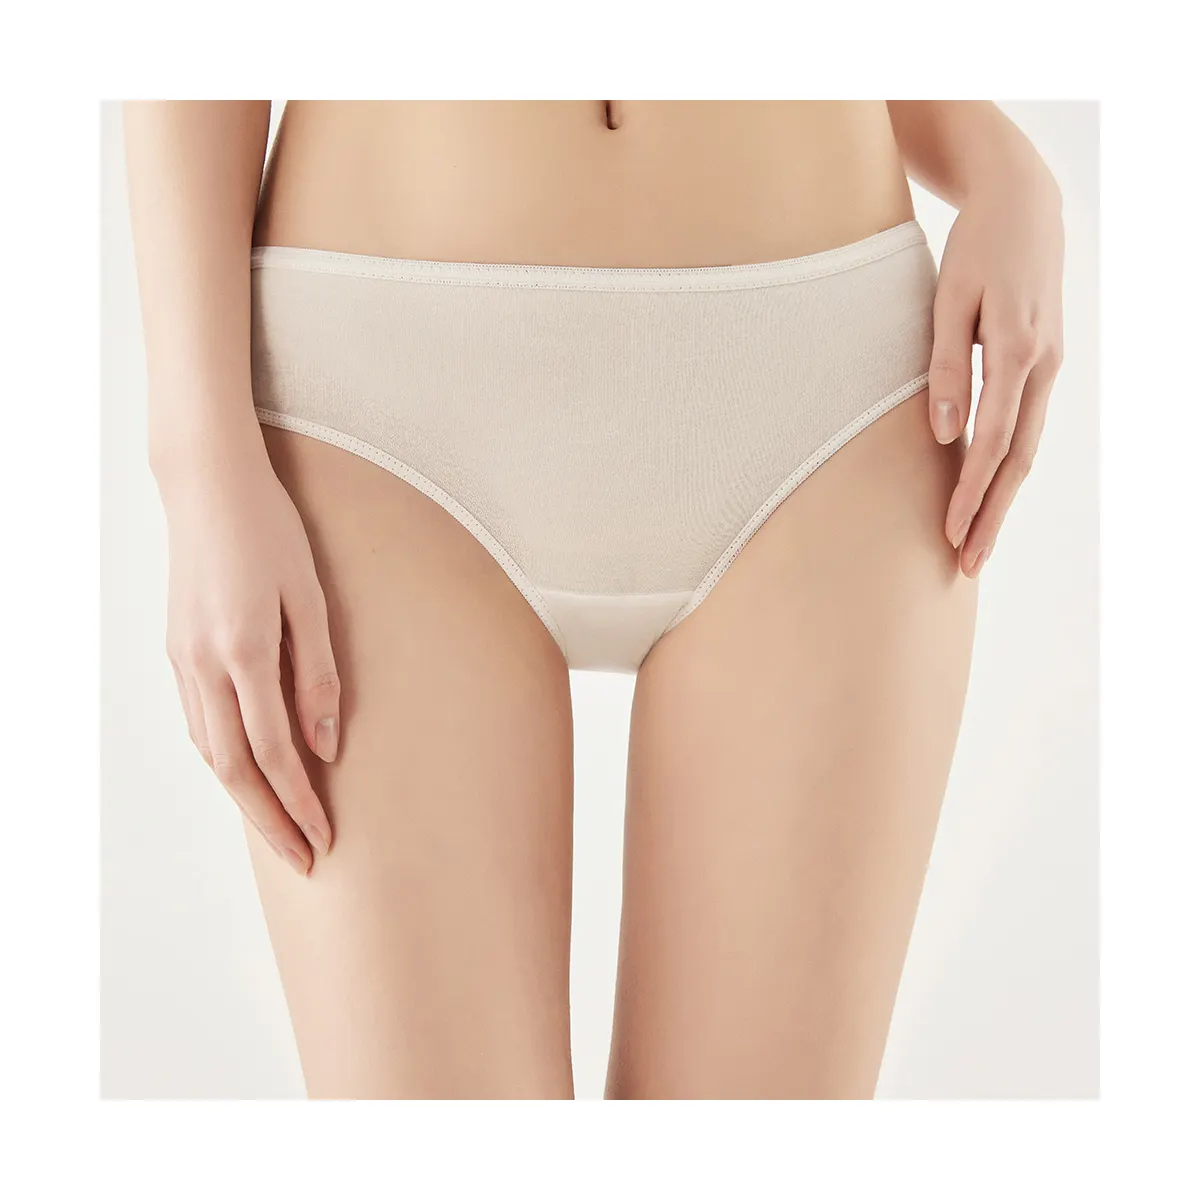 Disposable pure cotton briefs youngtime panties disposable disposable women's brief underwear